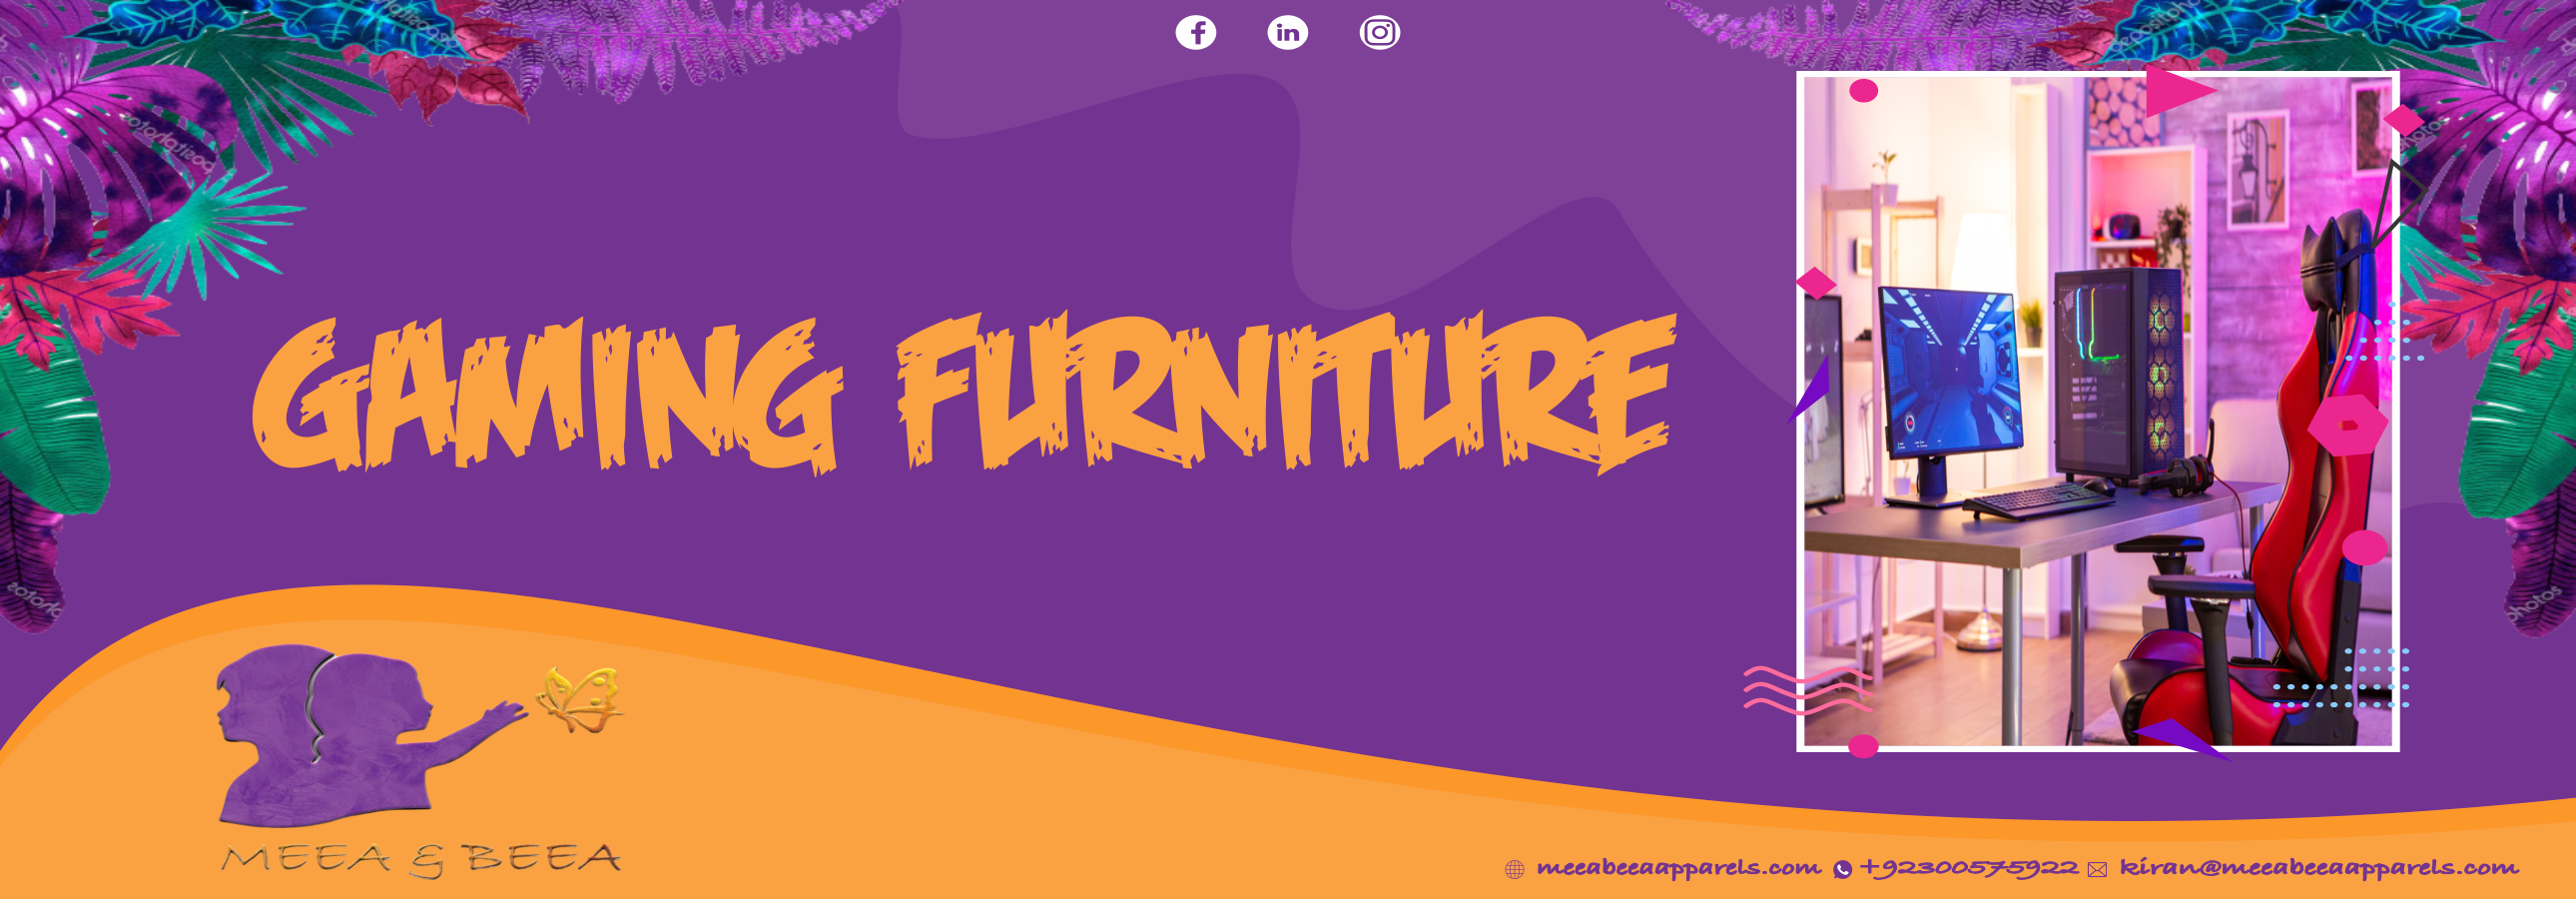 Gaming Furniture